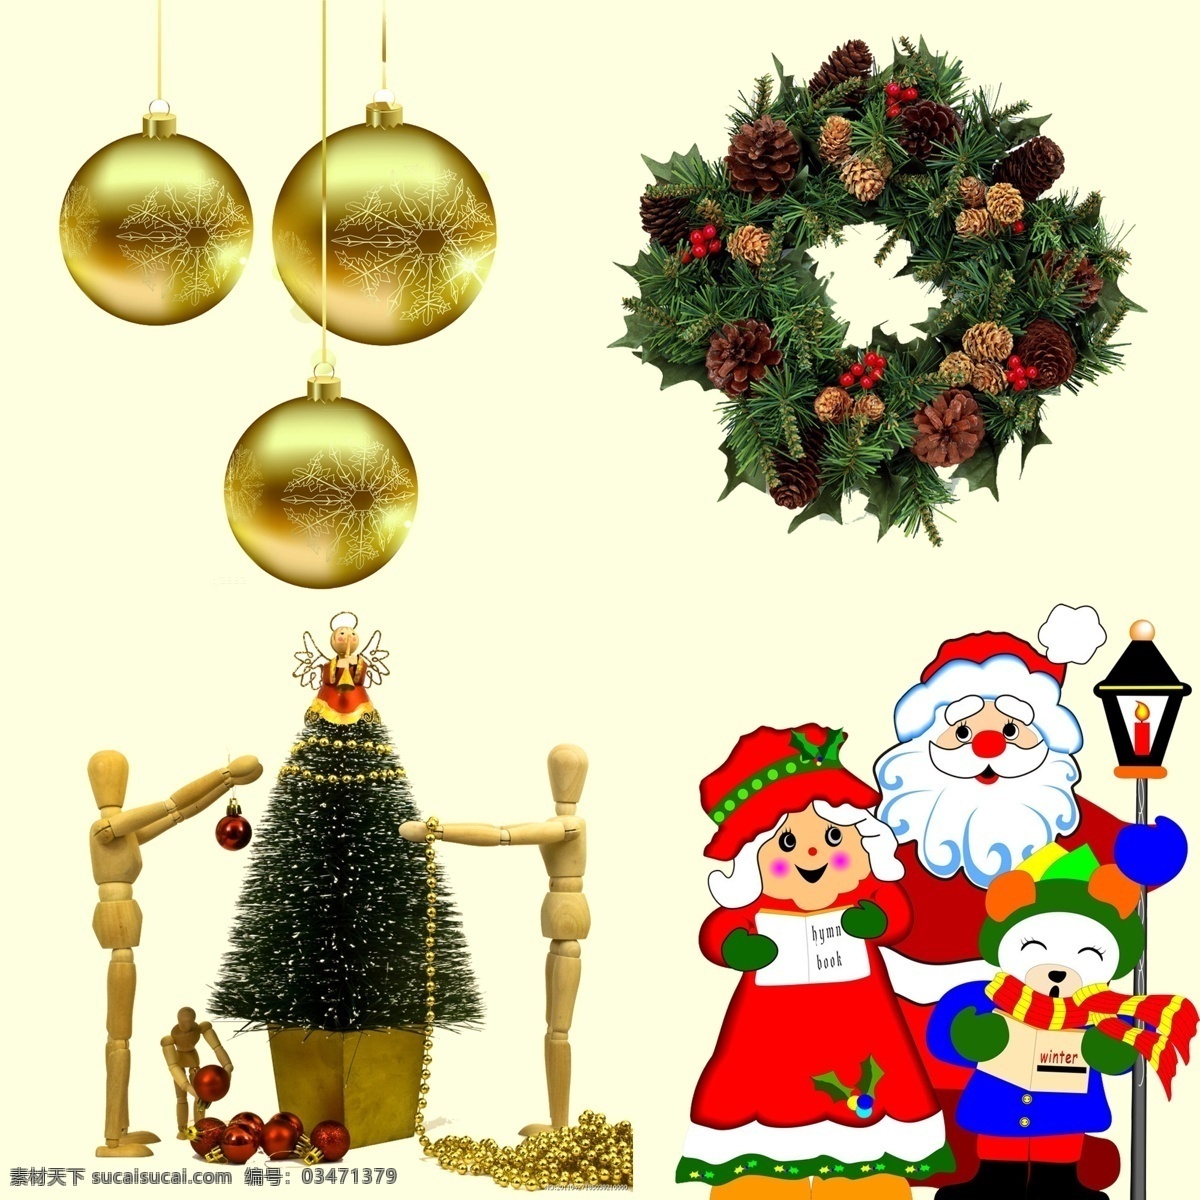 圣诞装饰抠图 圣诞球 圣诞素材 圣诞礼物 圣诞雪人卡通 圣诞树 分层 源文件